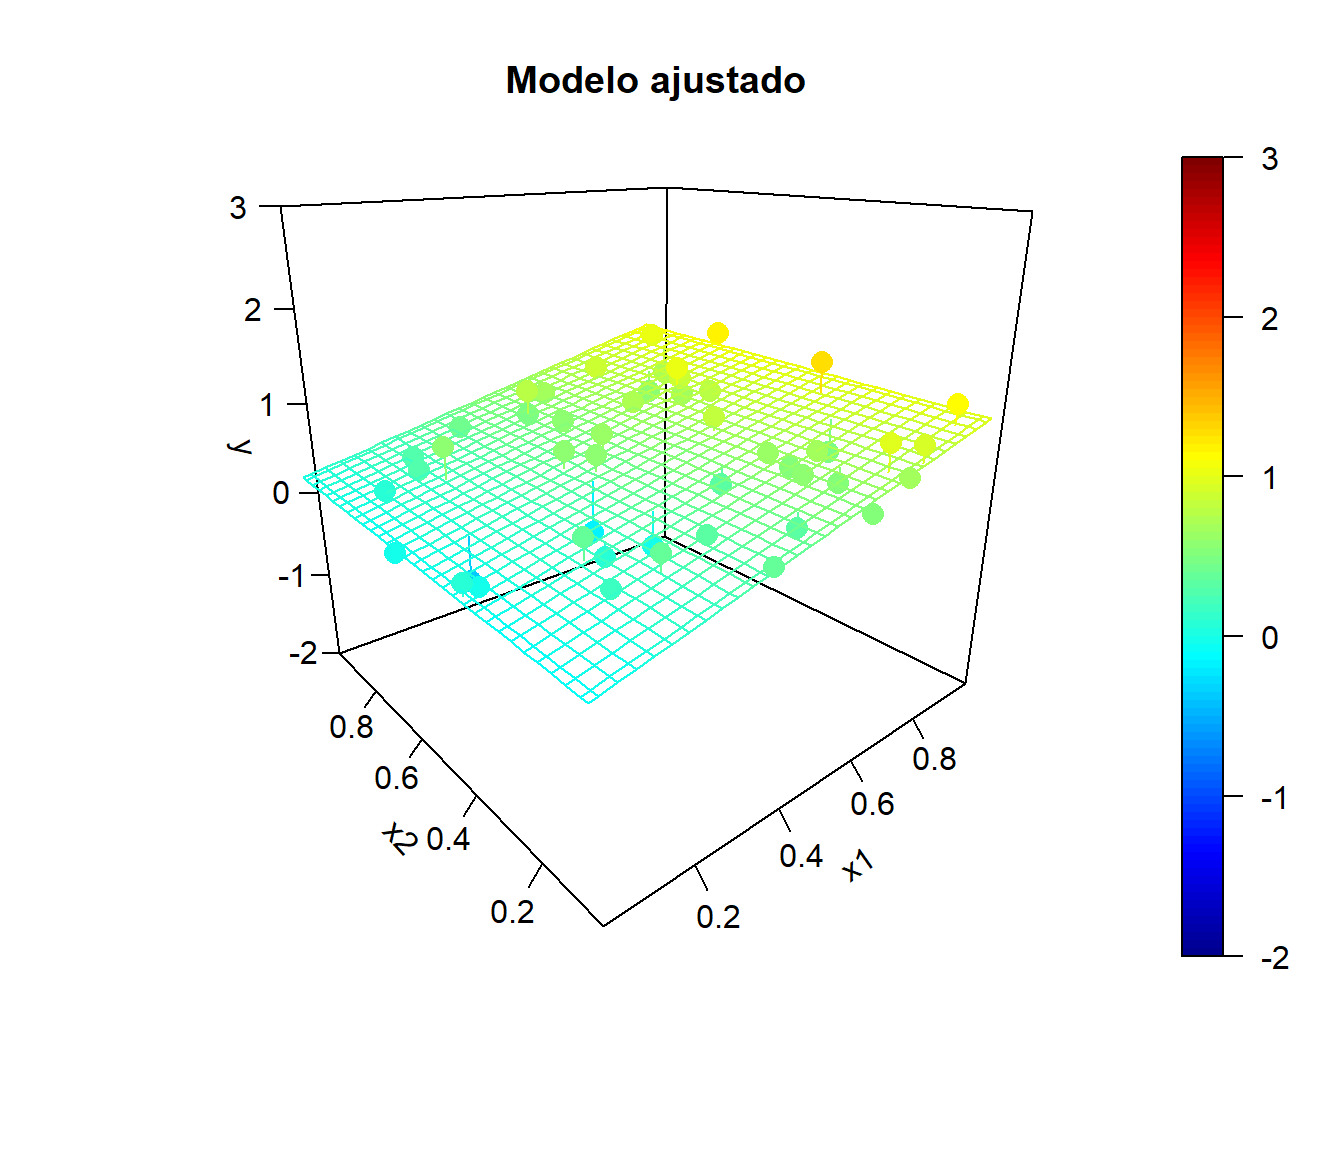 Ejemplo de simulaciones bajo independencia y correspondientes modelos ajustados.